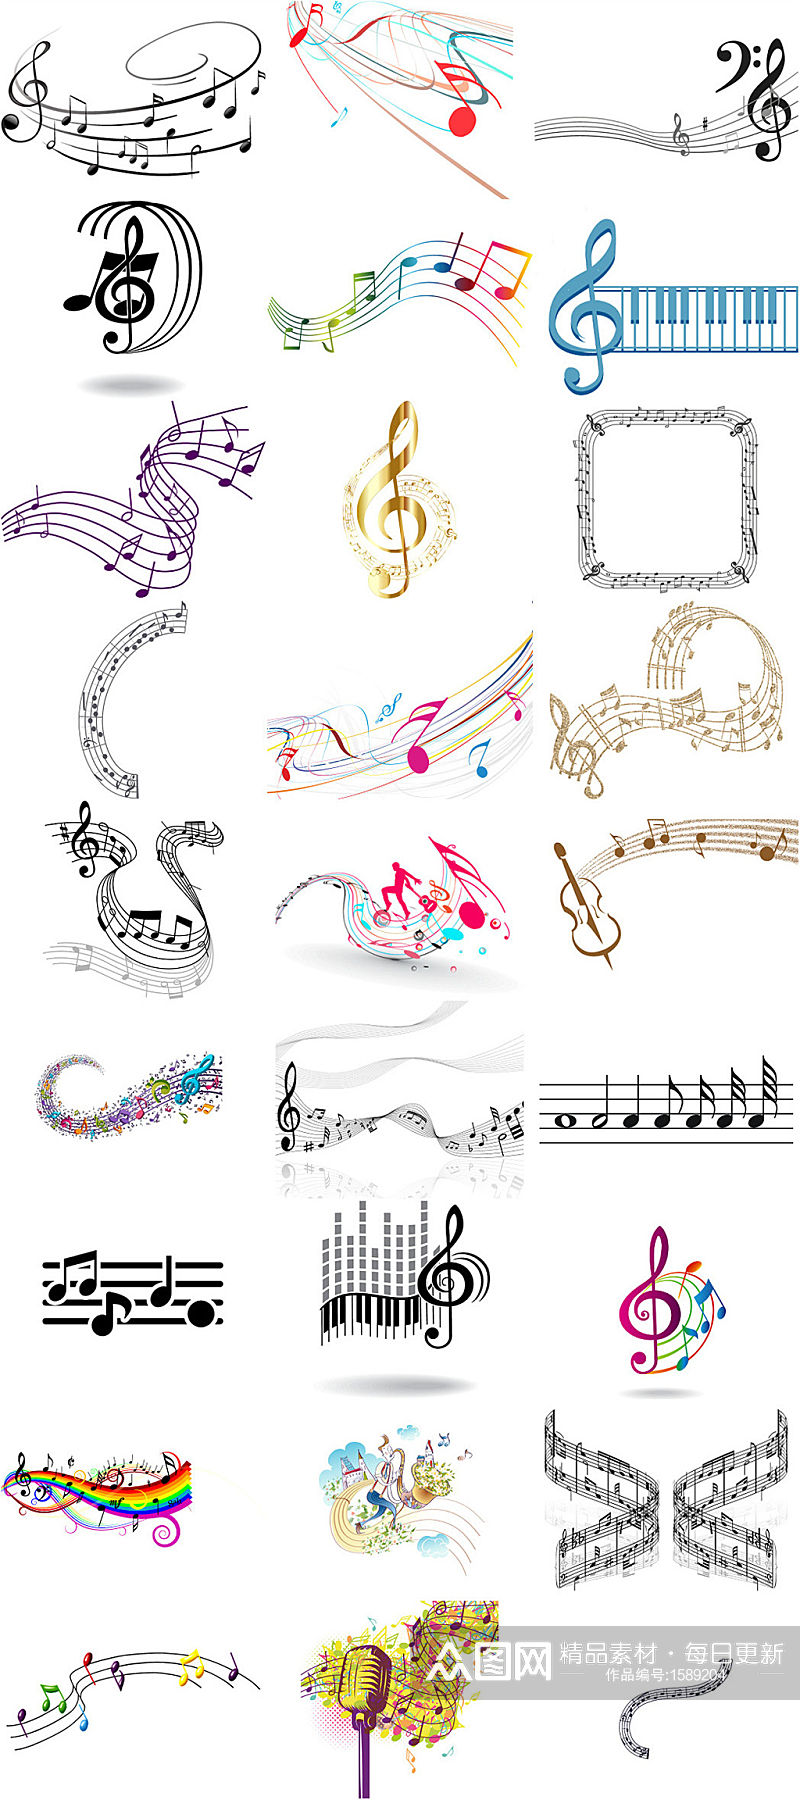 音符五线谱音乐符号海报设计素材素材